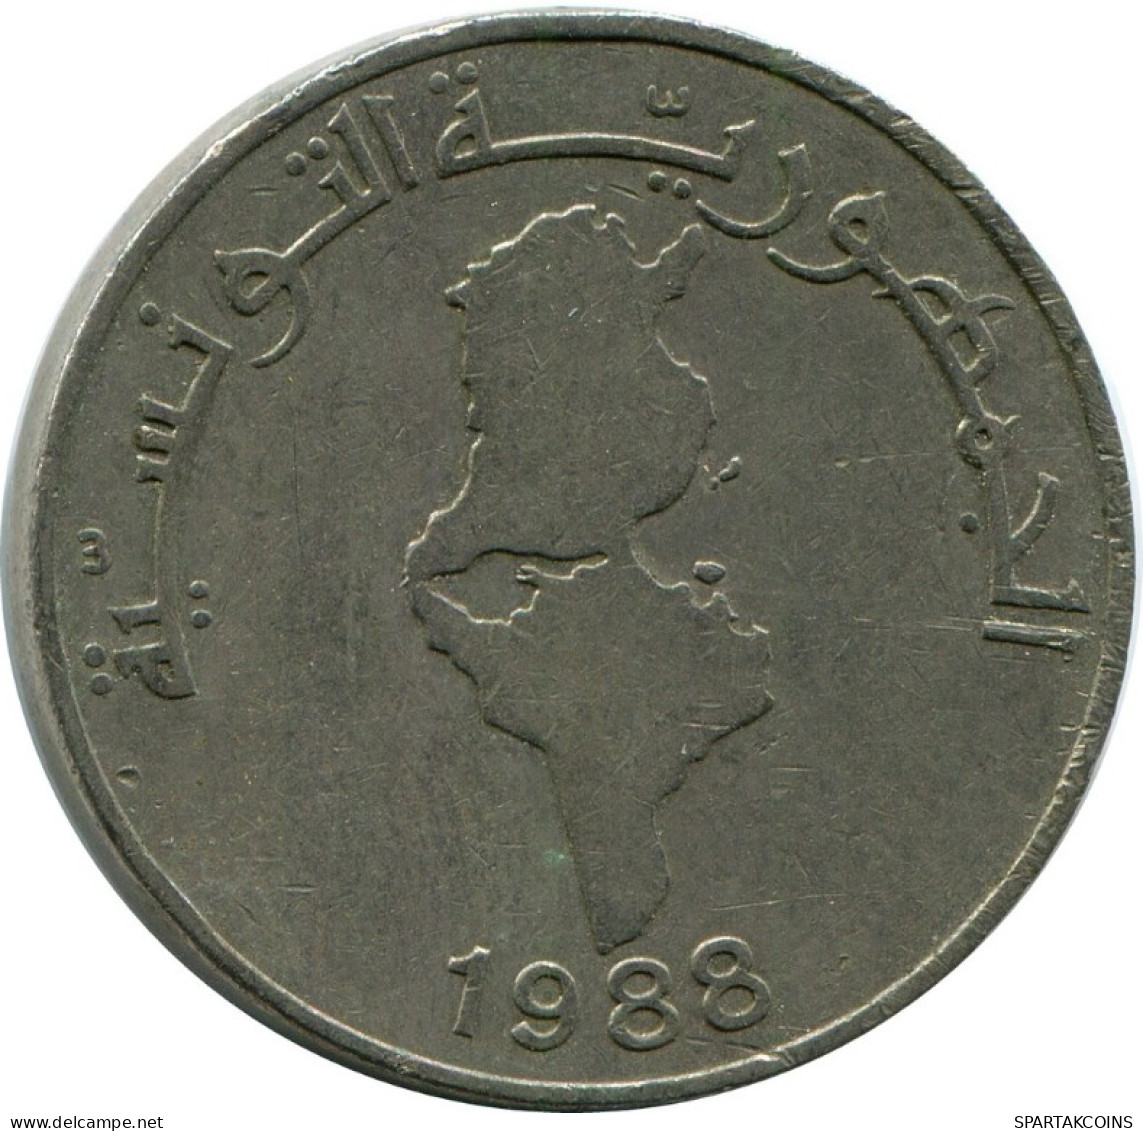 1 DINAR 1988 TUNISIA Coin #AH929.U.A - Tunisia